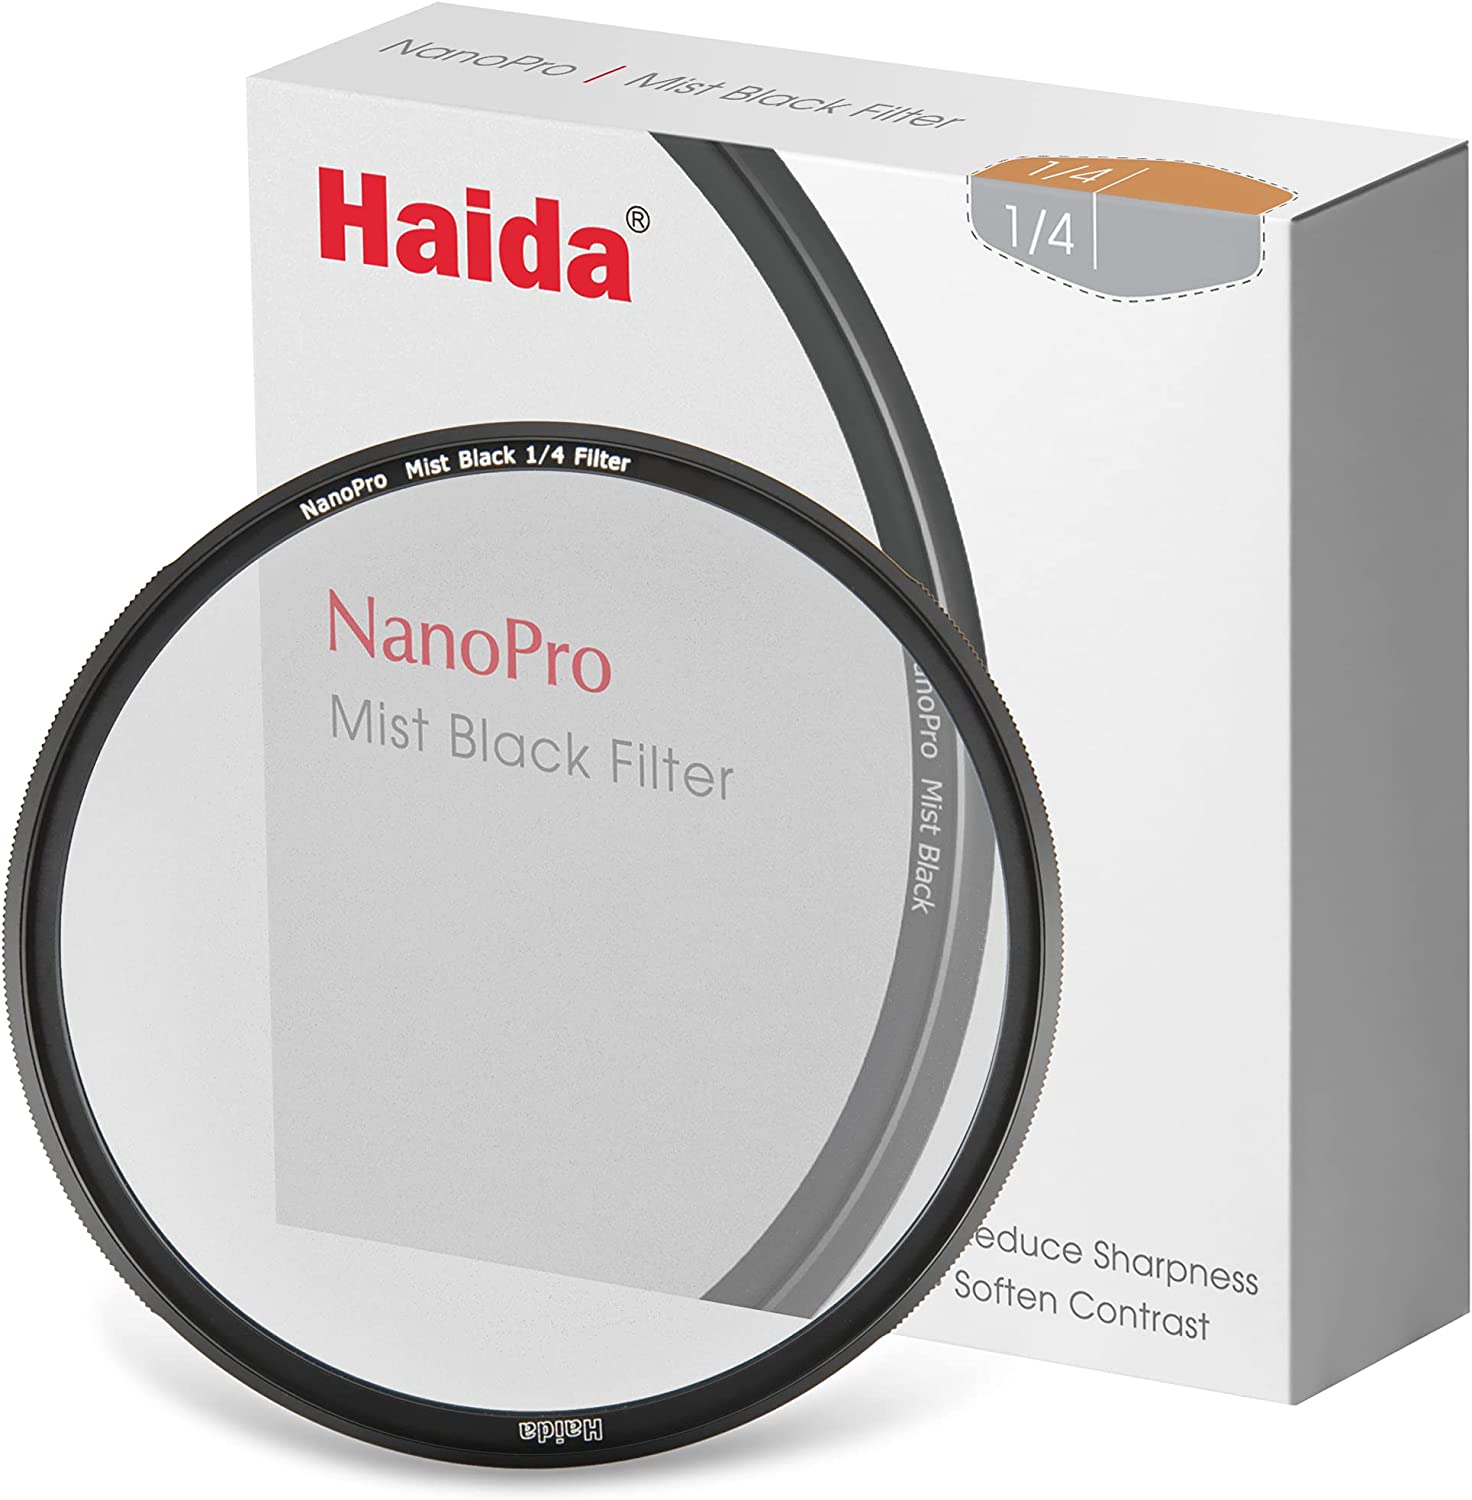 Haida NanoPro Mist Black 1/4 Filtro 72mm